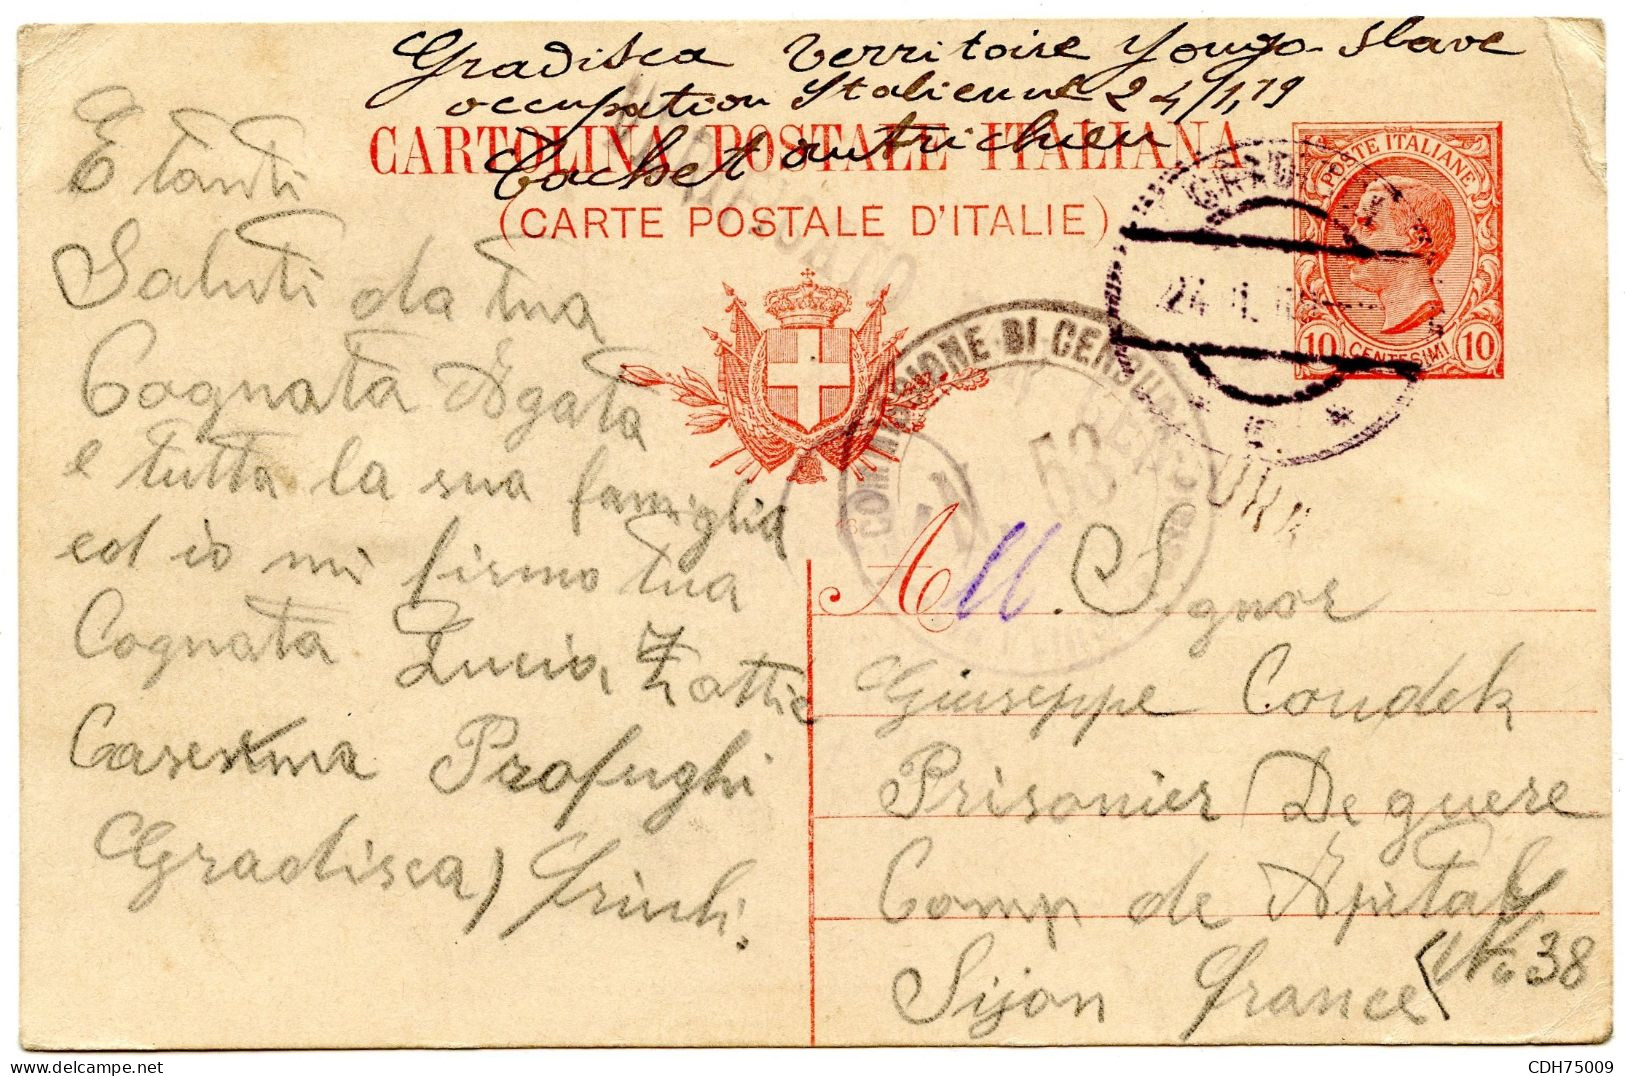 ITALIE - CARTE POSTALE 10C DE GRADISCA POUR LA FRANCE, 1919 - Vénétie Julienne